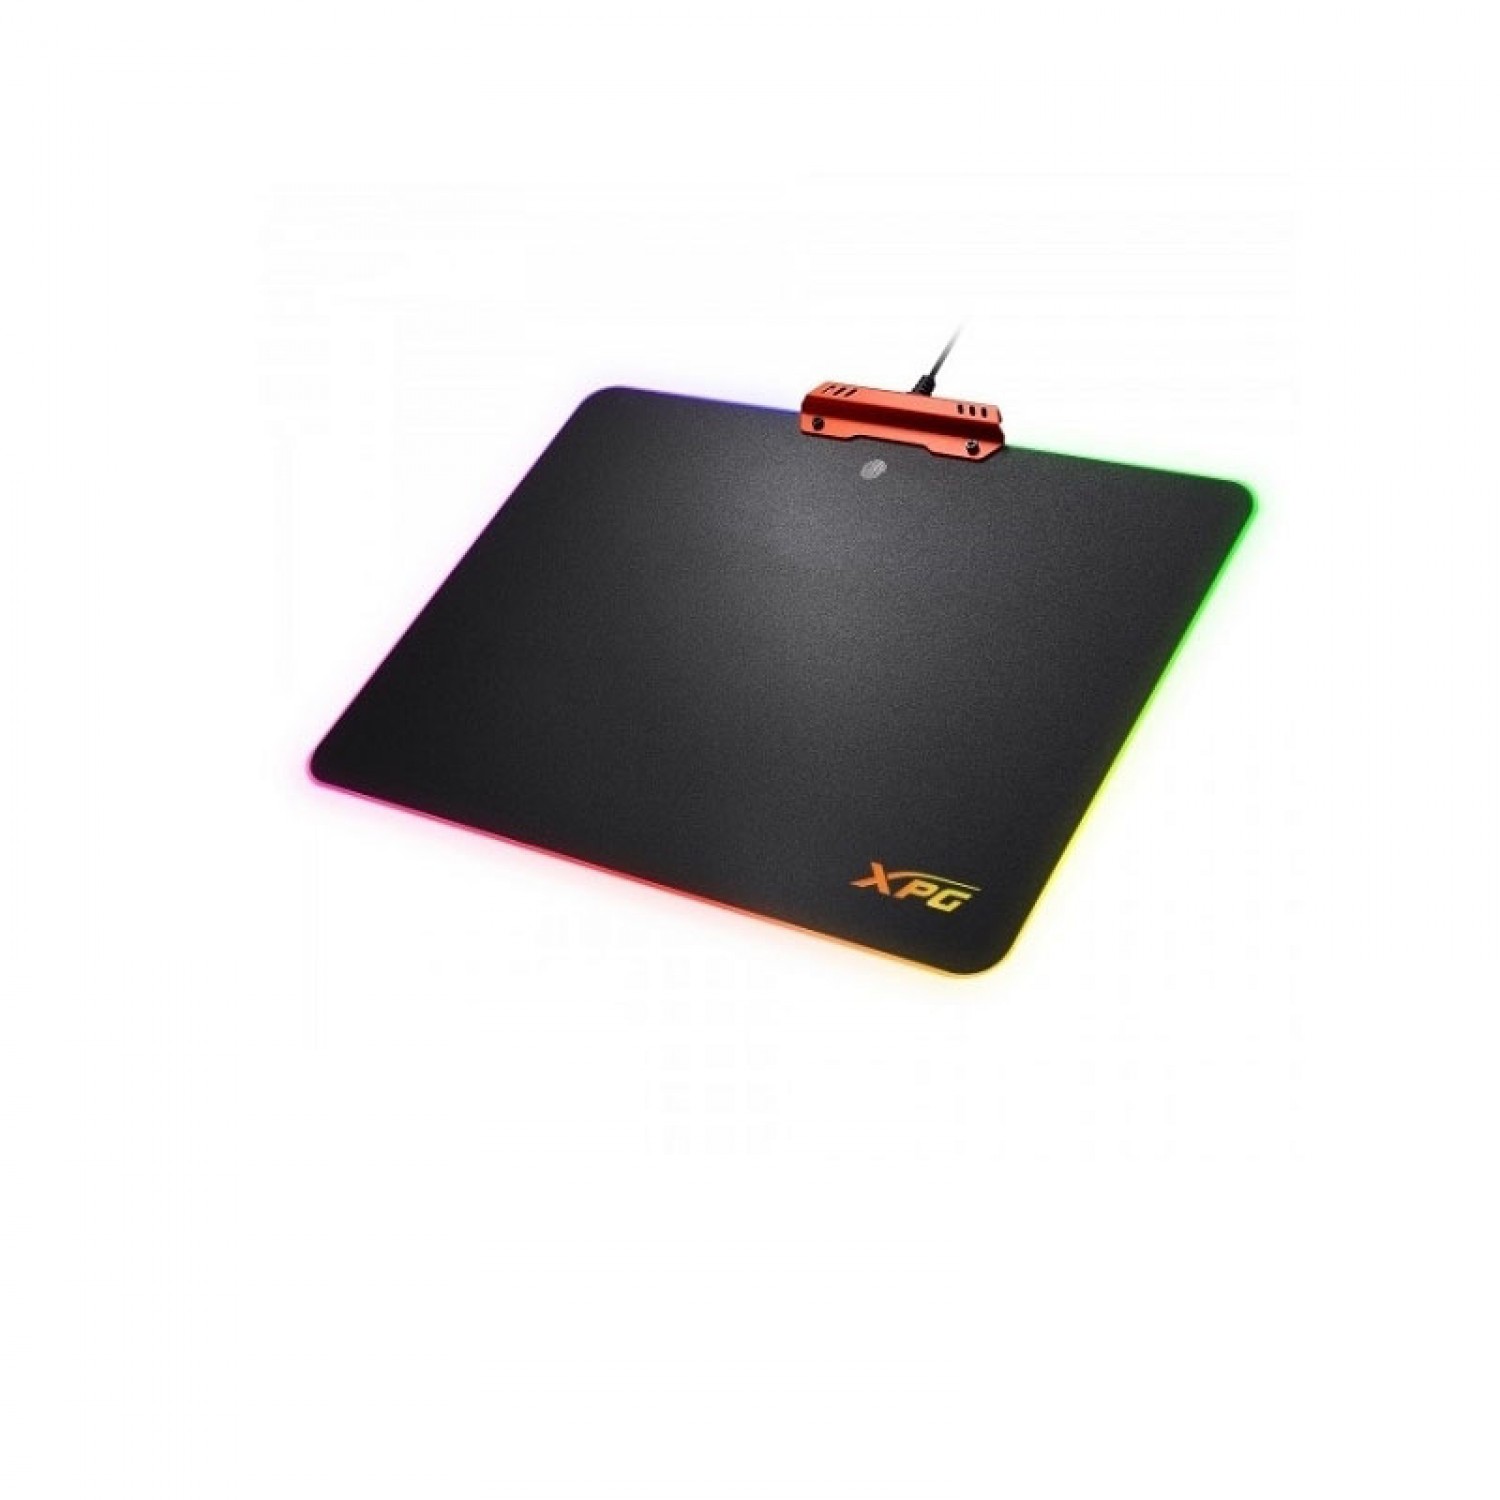 Adata XPG Infarex R10 Mousepad-1